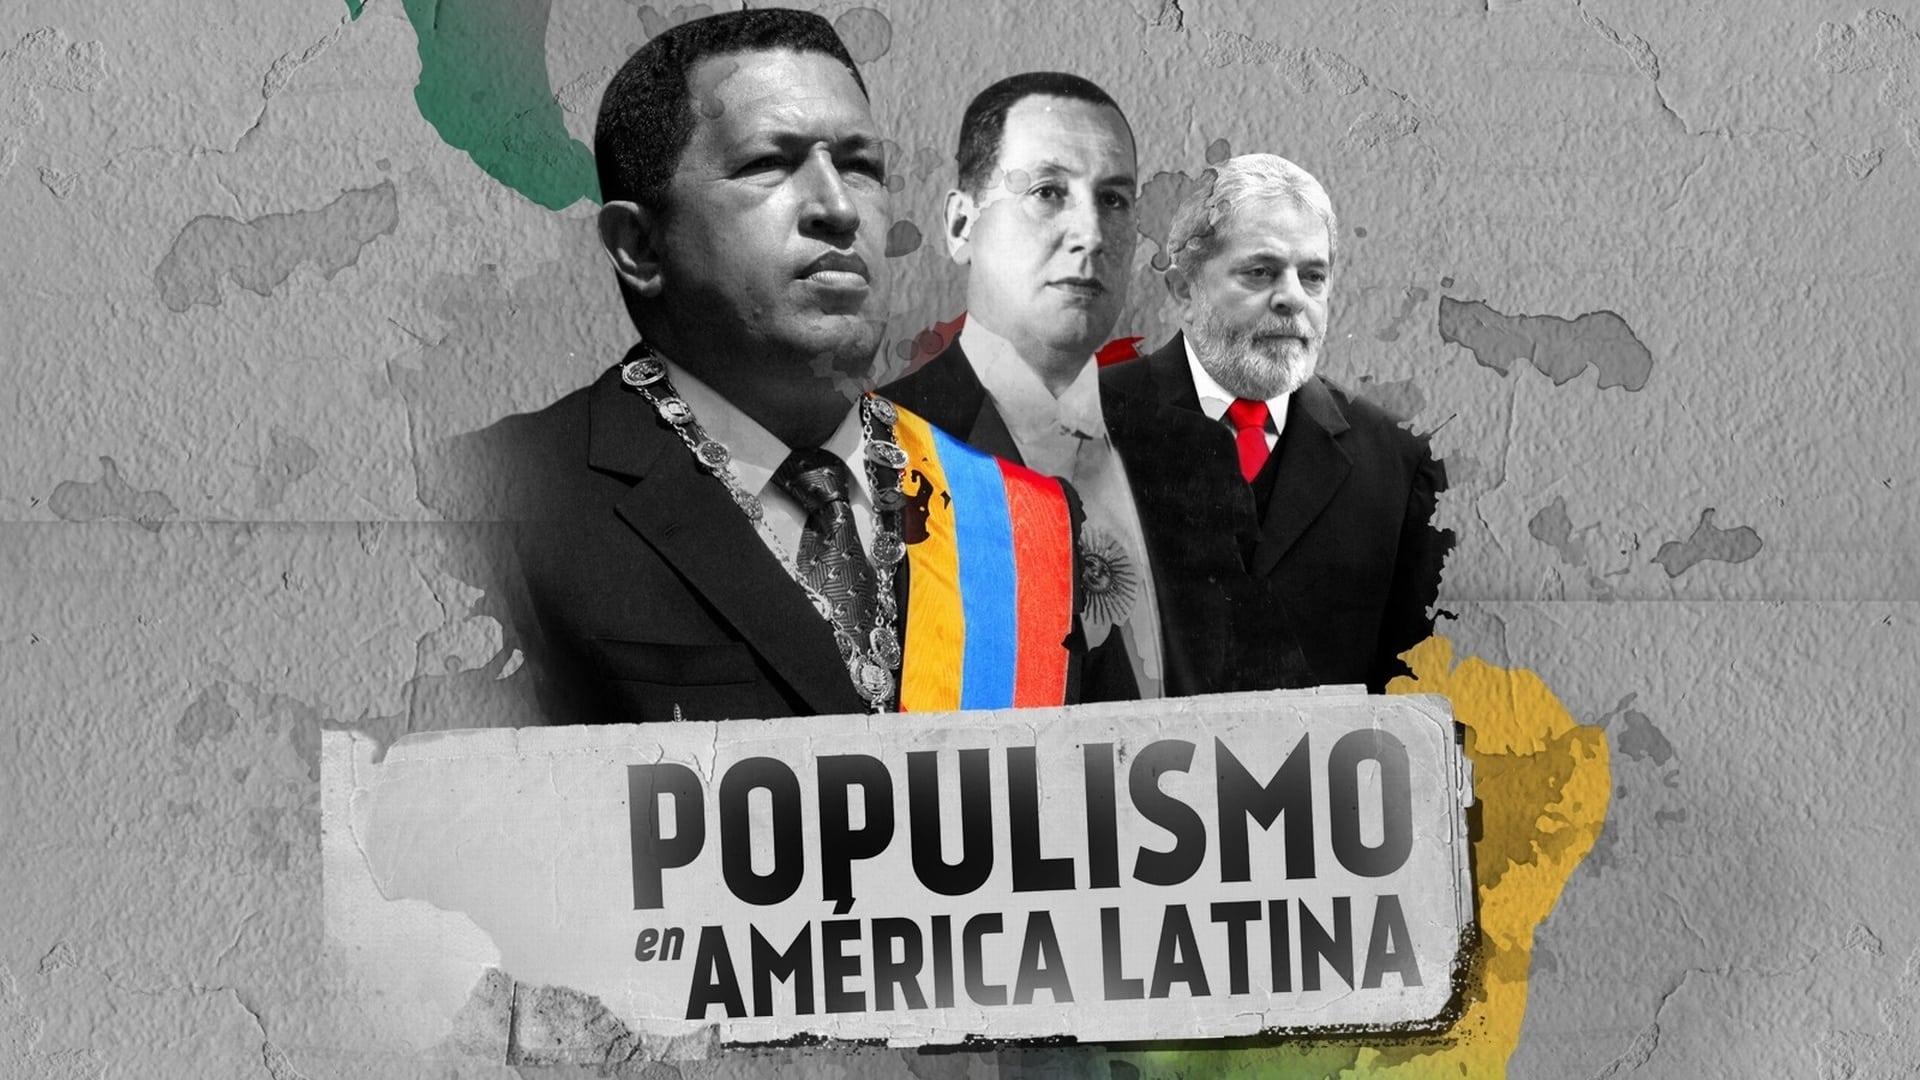 Populismo en América Latina backdrop